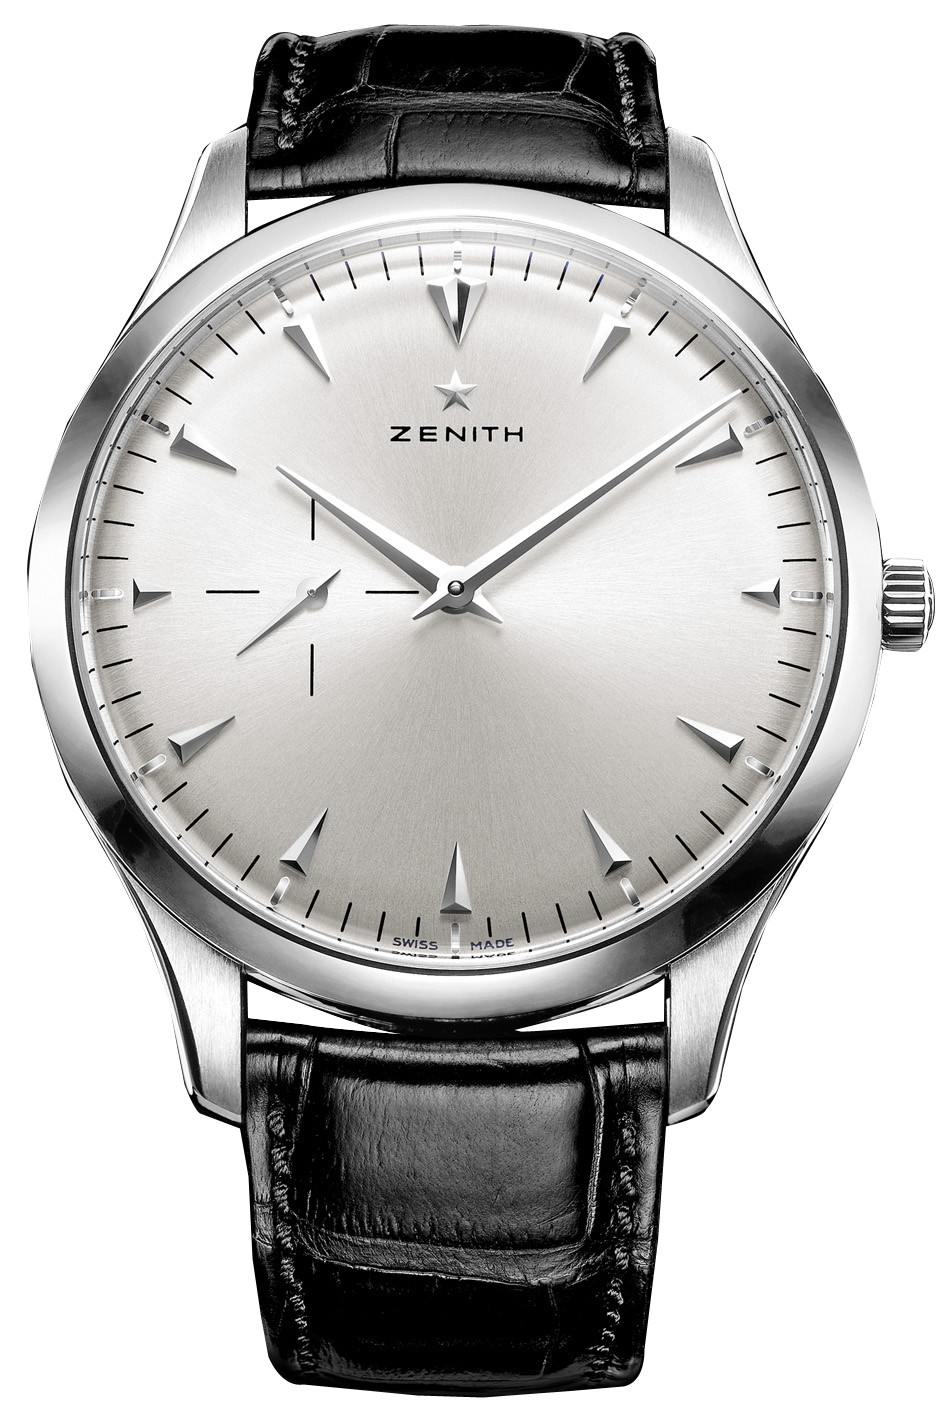 Zenith真力时腕表使用建议及保养方法